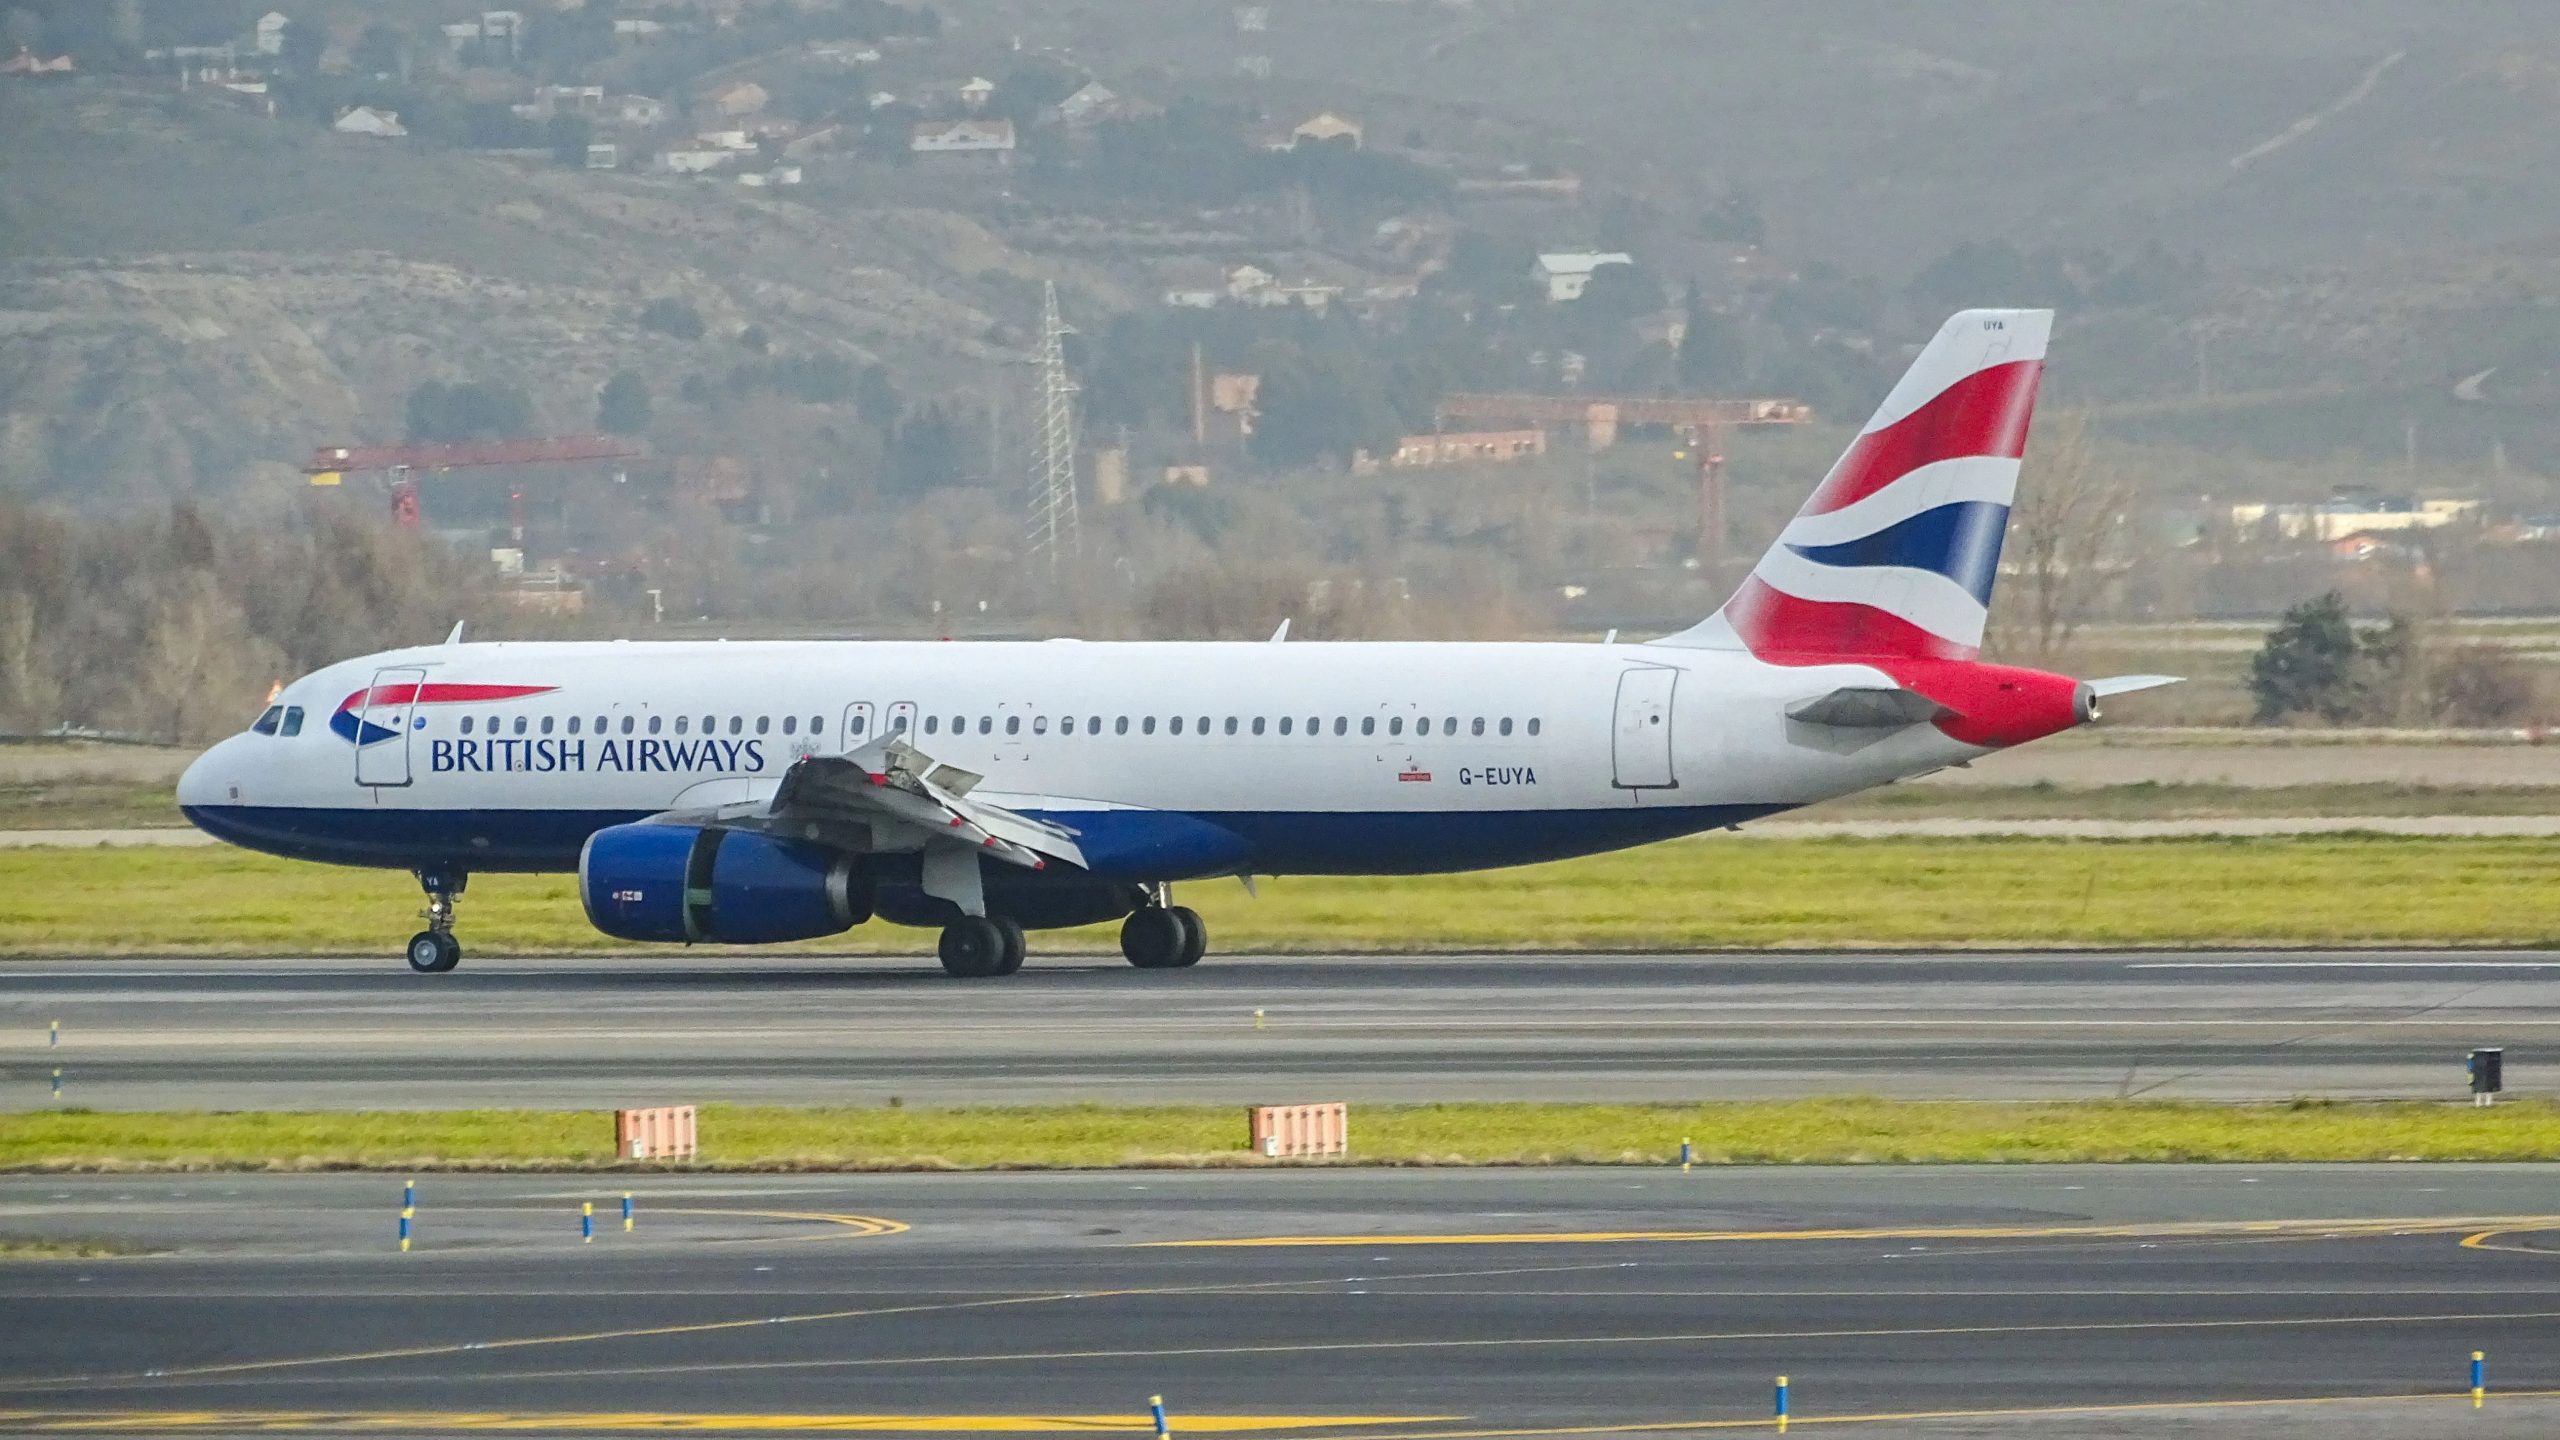 Boeing, Boeing, gone! British Airways sells off jumbo memorabilia